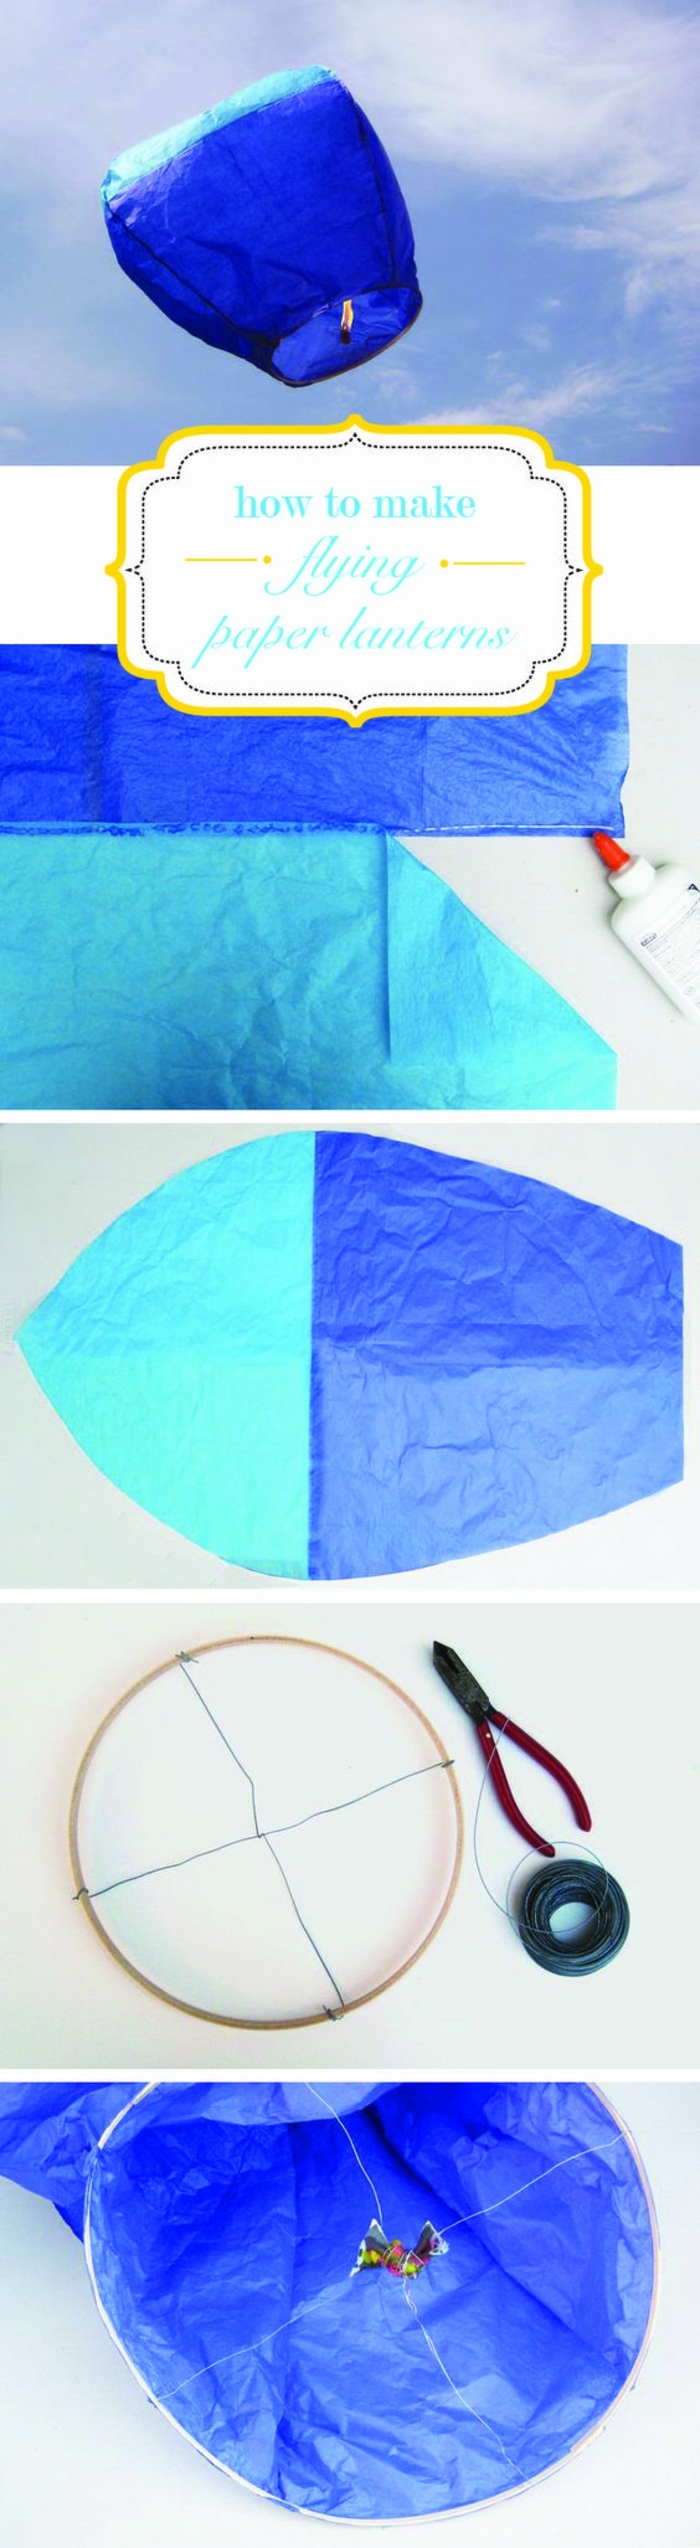 fliegende laterne selber basteln aus blauem papier, zange, faden